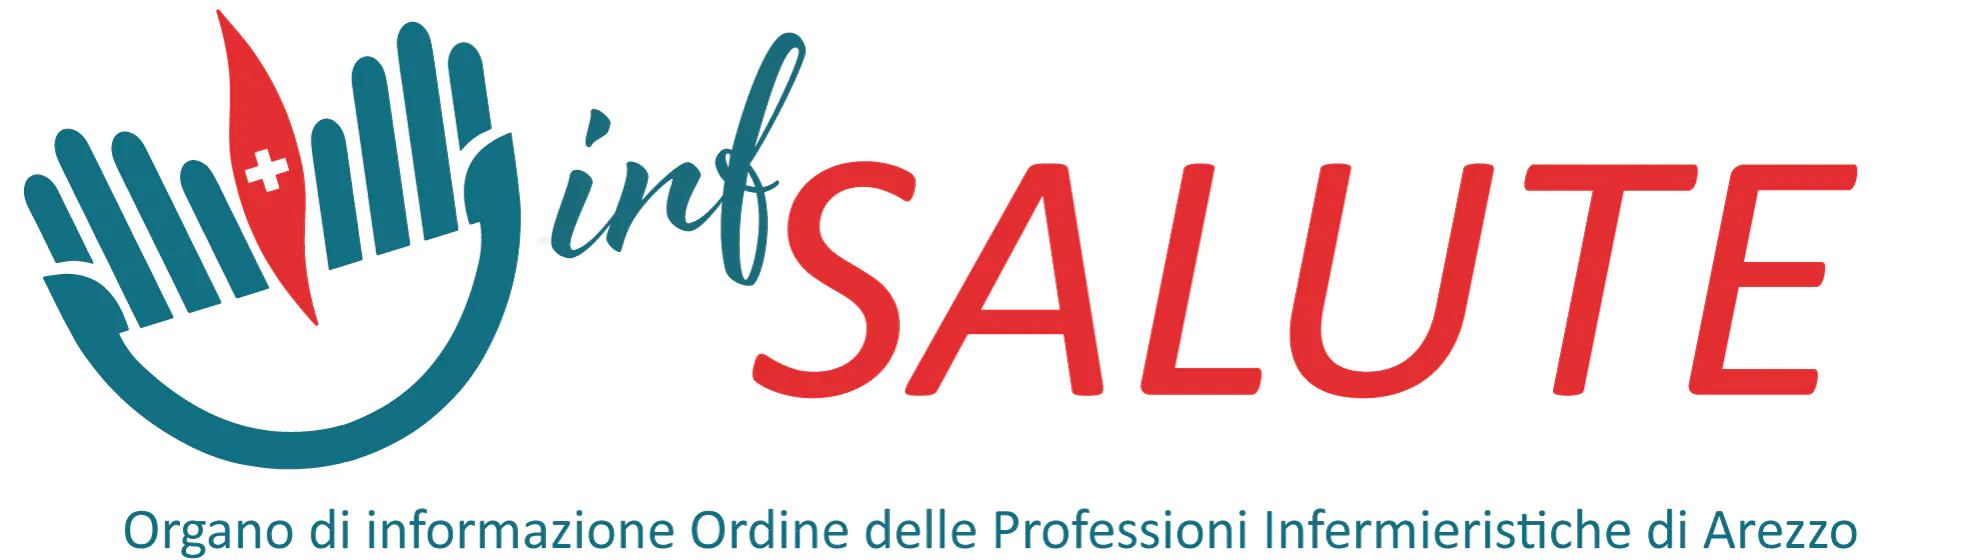 logo-Inf-SALUTE_gellus